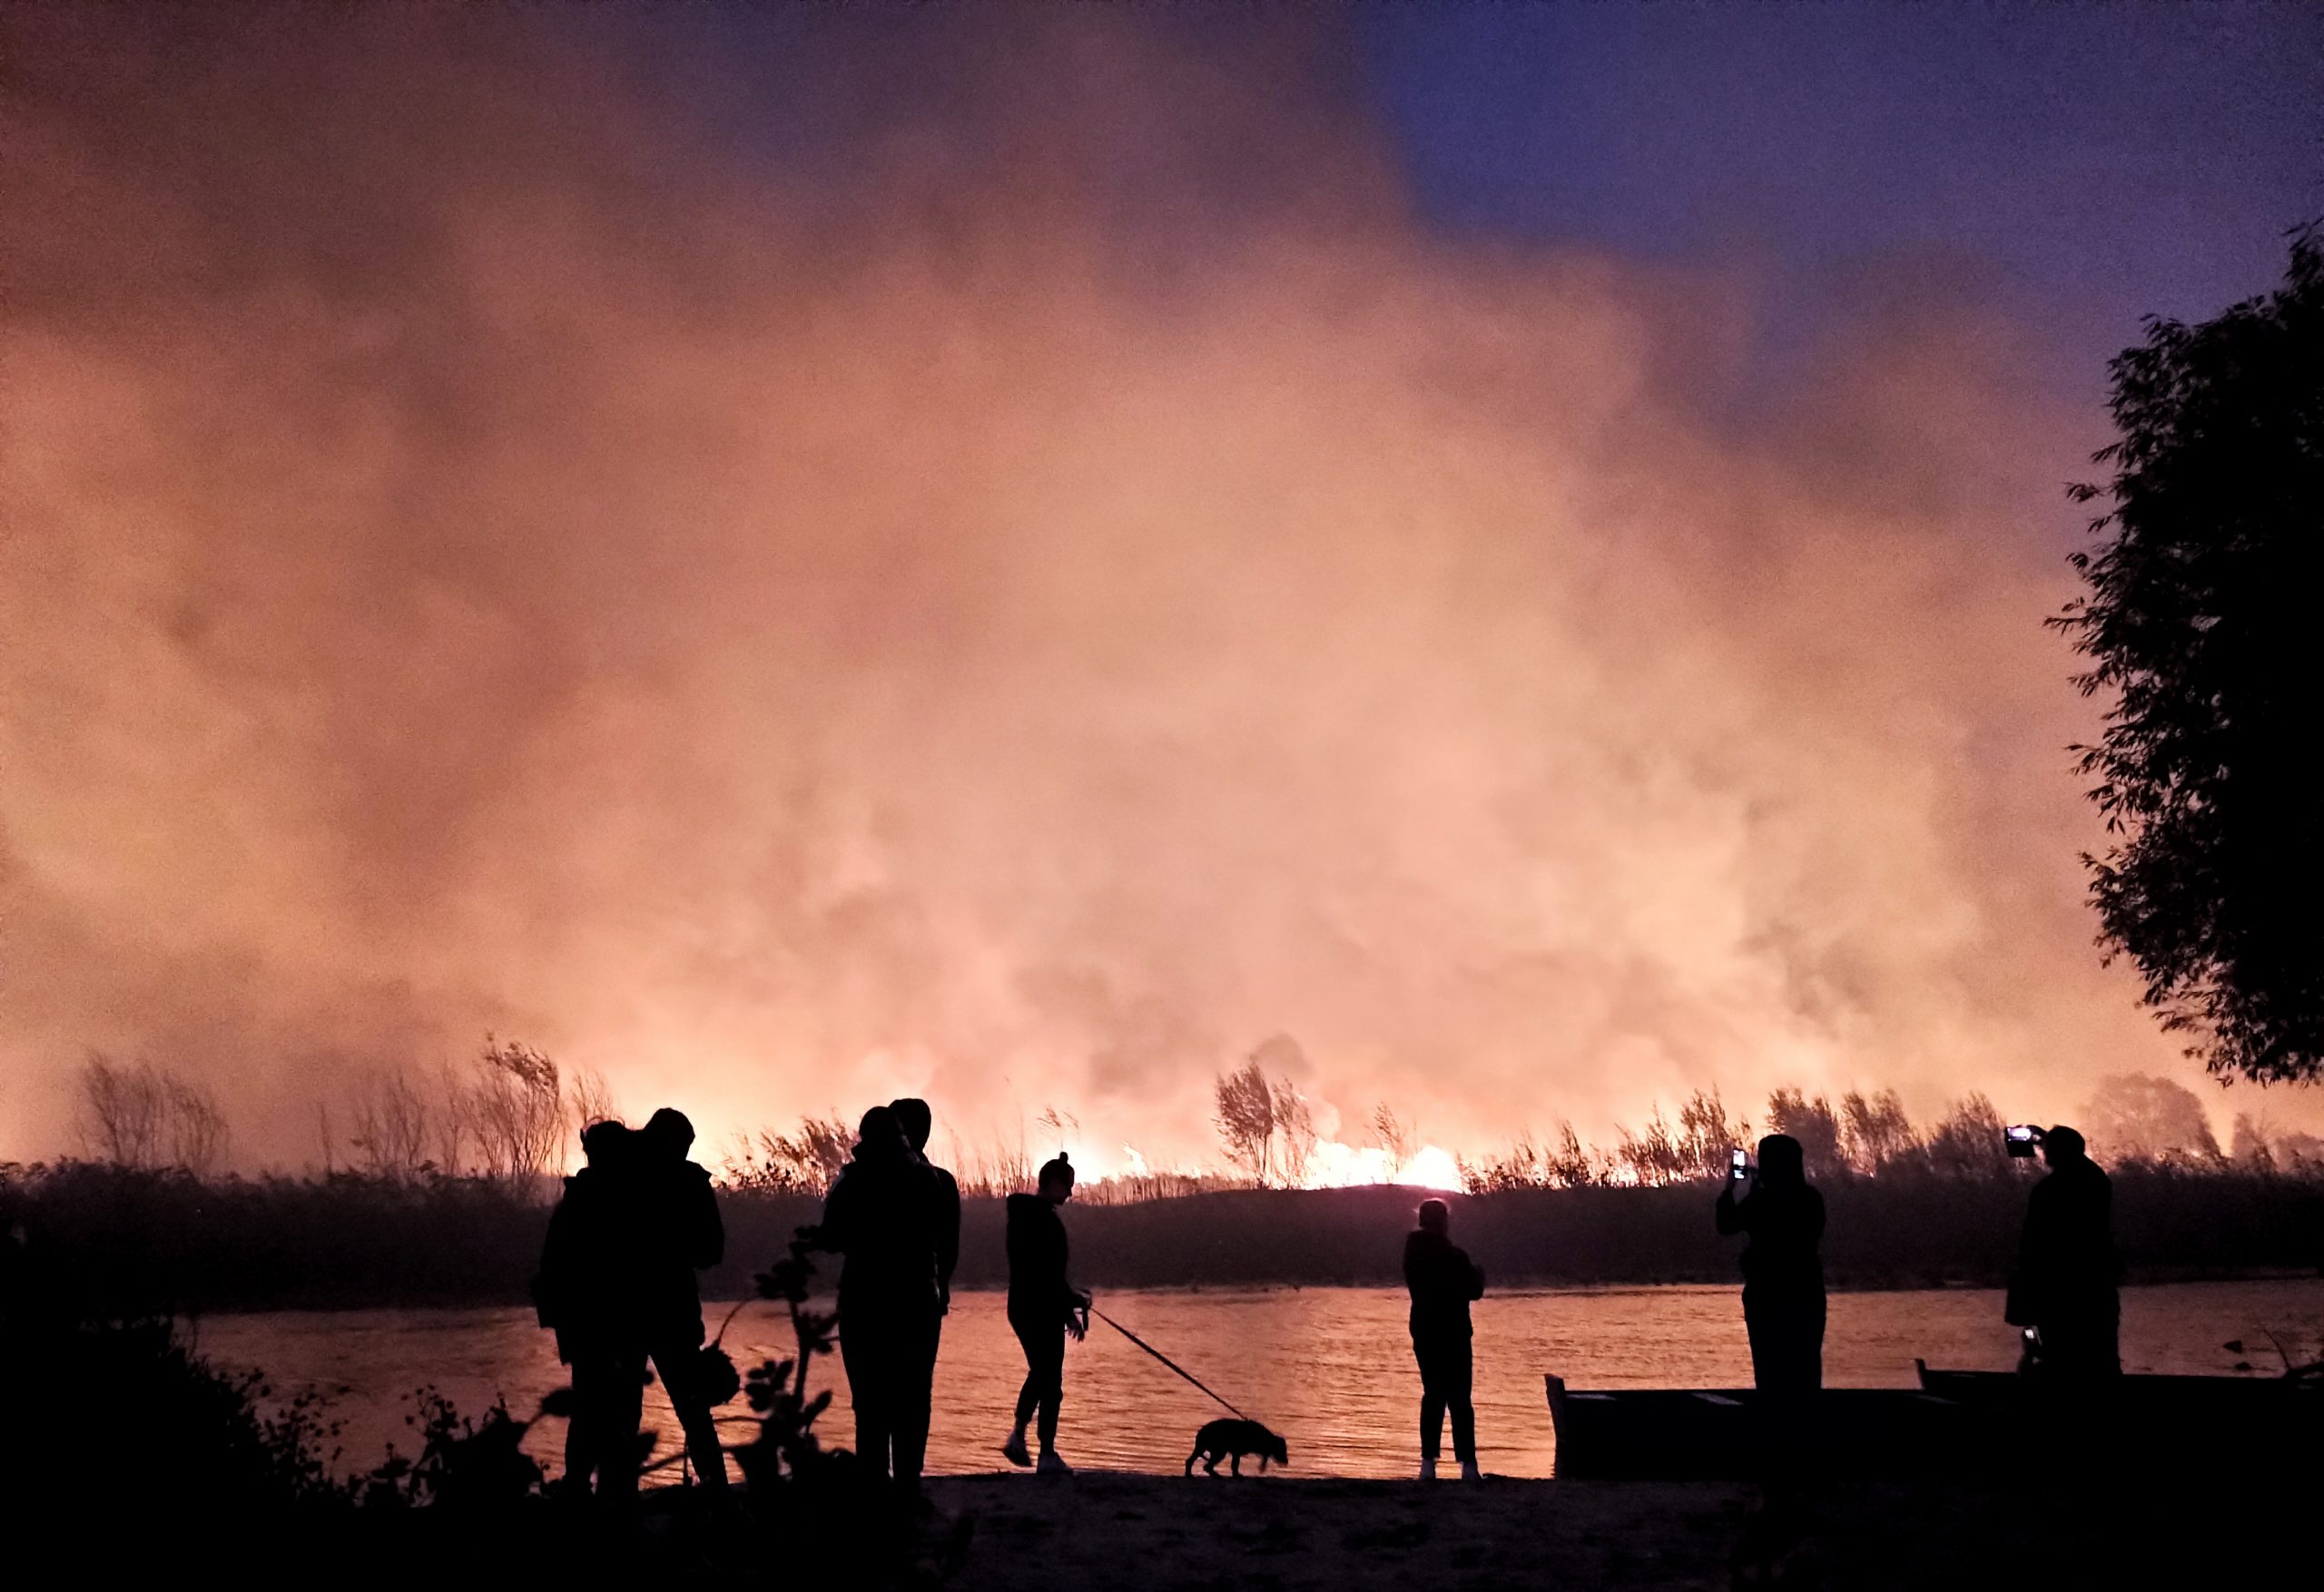 Жители деревни Отрадное Воронежской области смотрят на пожар. Фото Maxim Plotnikov/TASS/Scanpix/Leta